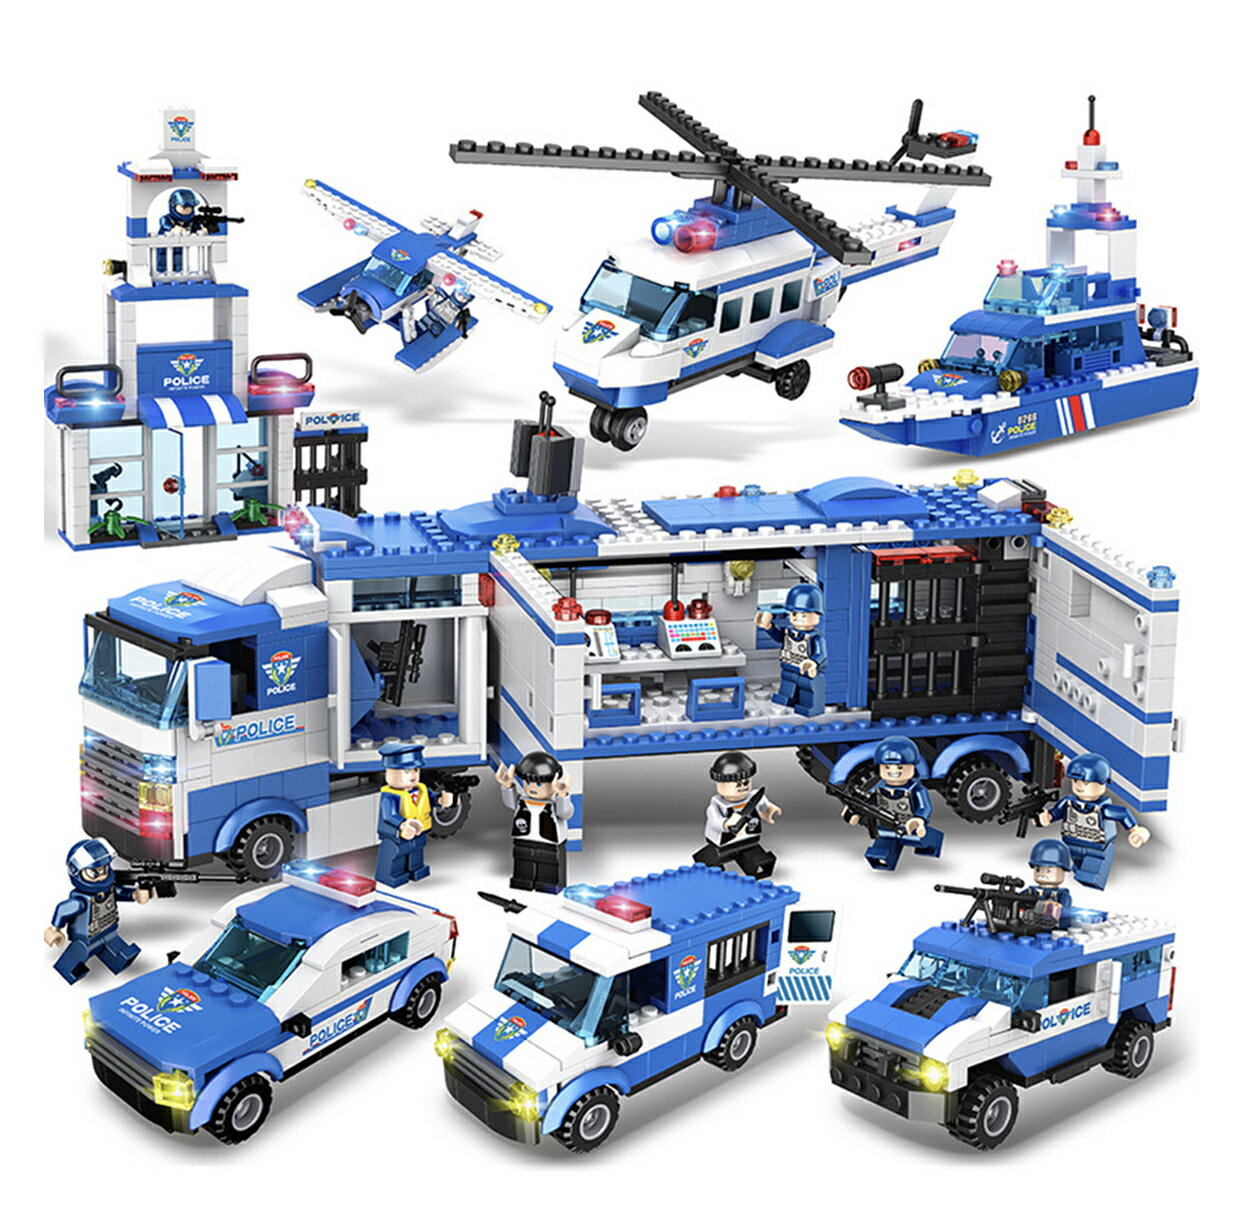 P10倍↑ビルディングブロック ヘリコプター 警察おもちゃ LEGO交換品 ビルディングブロック シティポリス ブロックおもちゃ 積み木 パトカーおもちゃ 警察車両 知育玩具 戦闘車両 DIY模型 6歳男の子おもちゃ プレゼント クリスマス